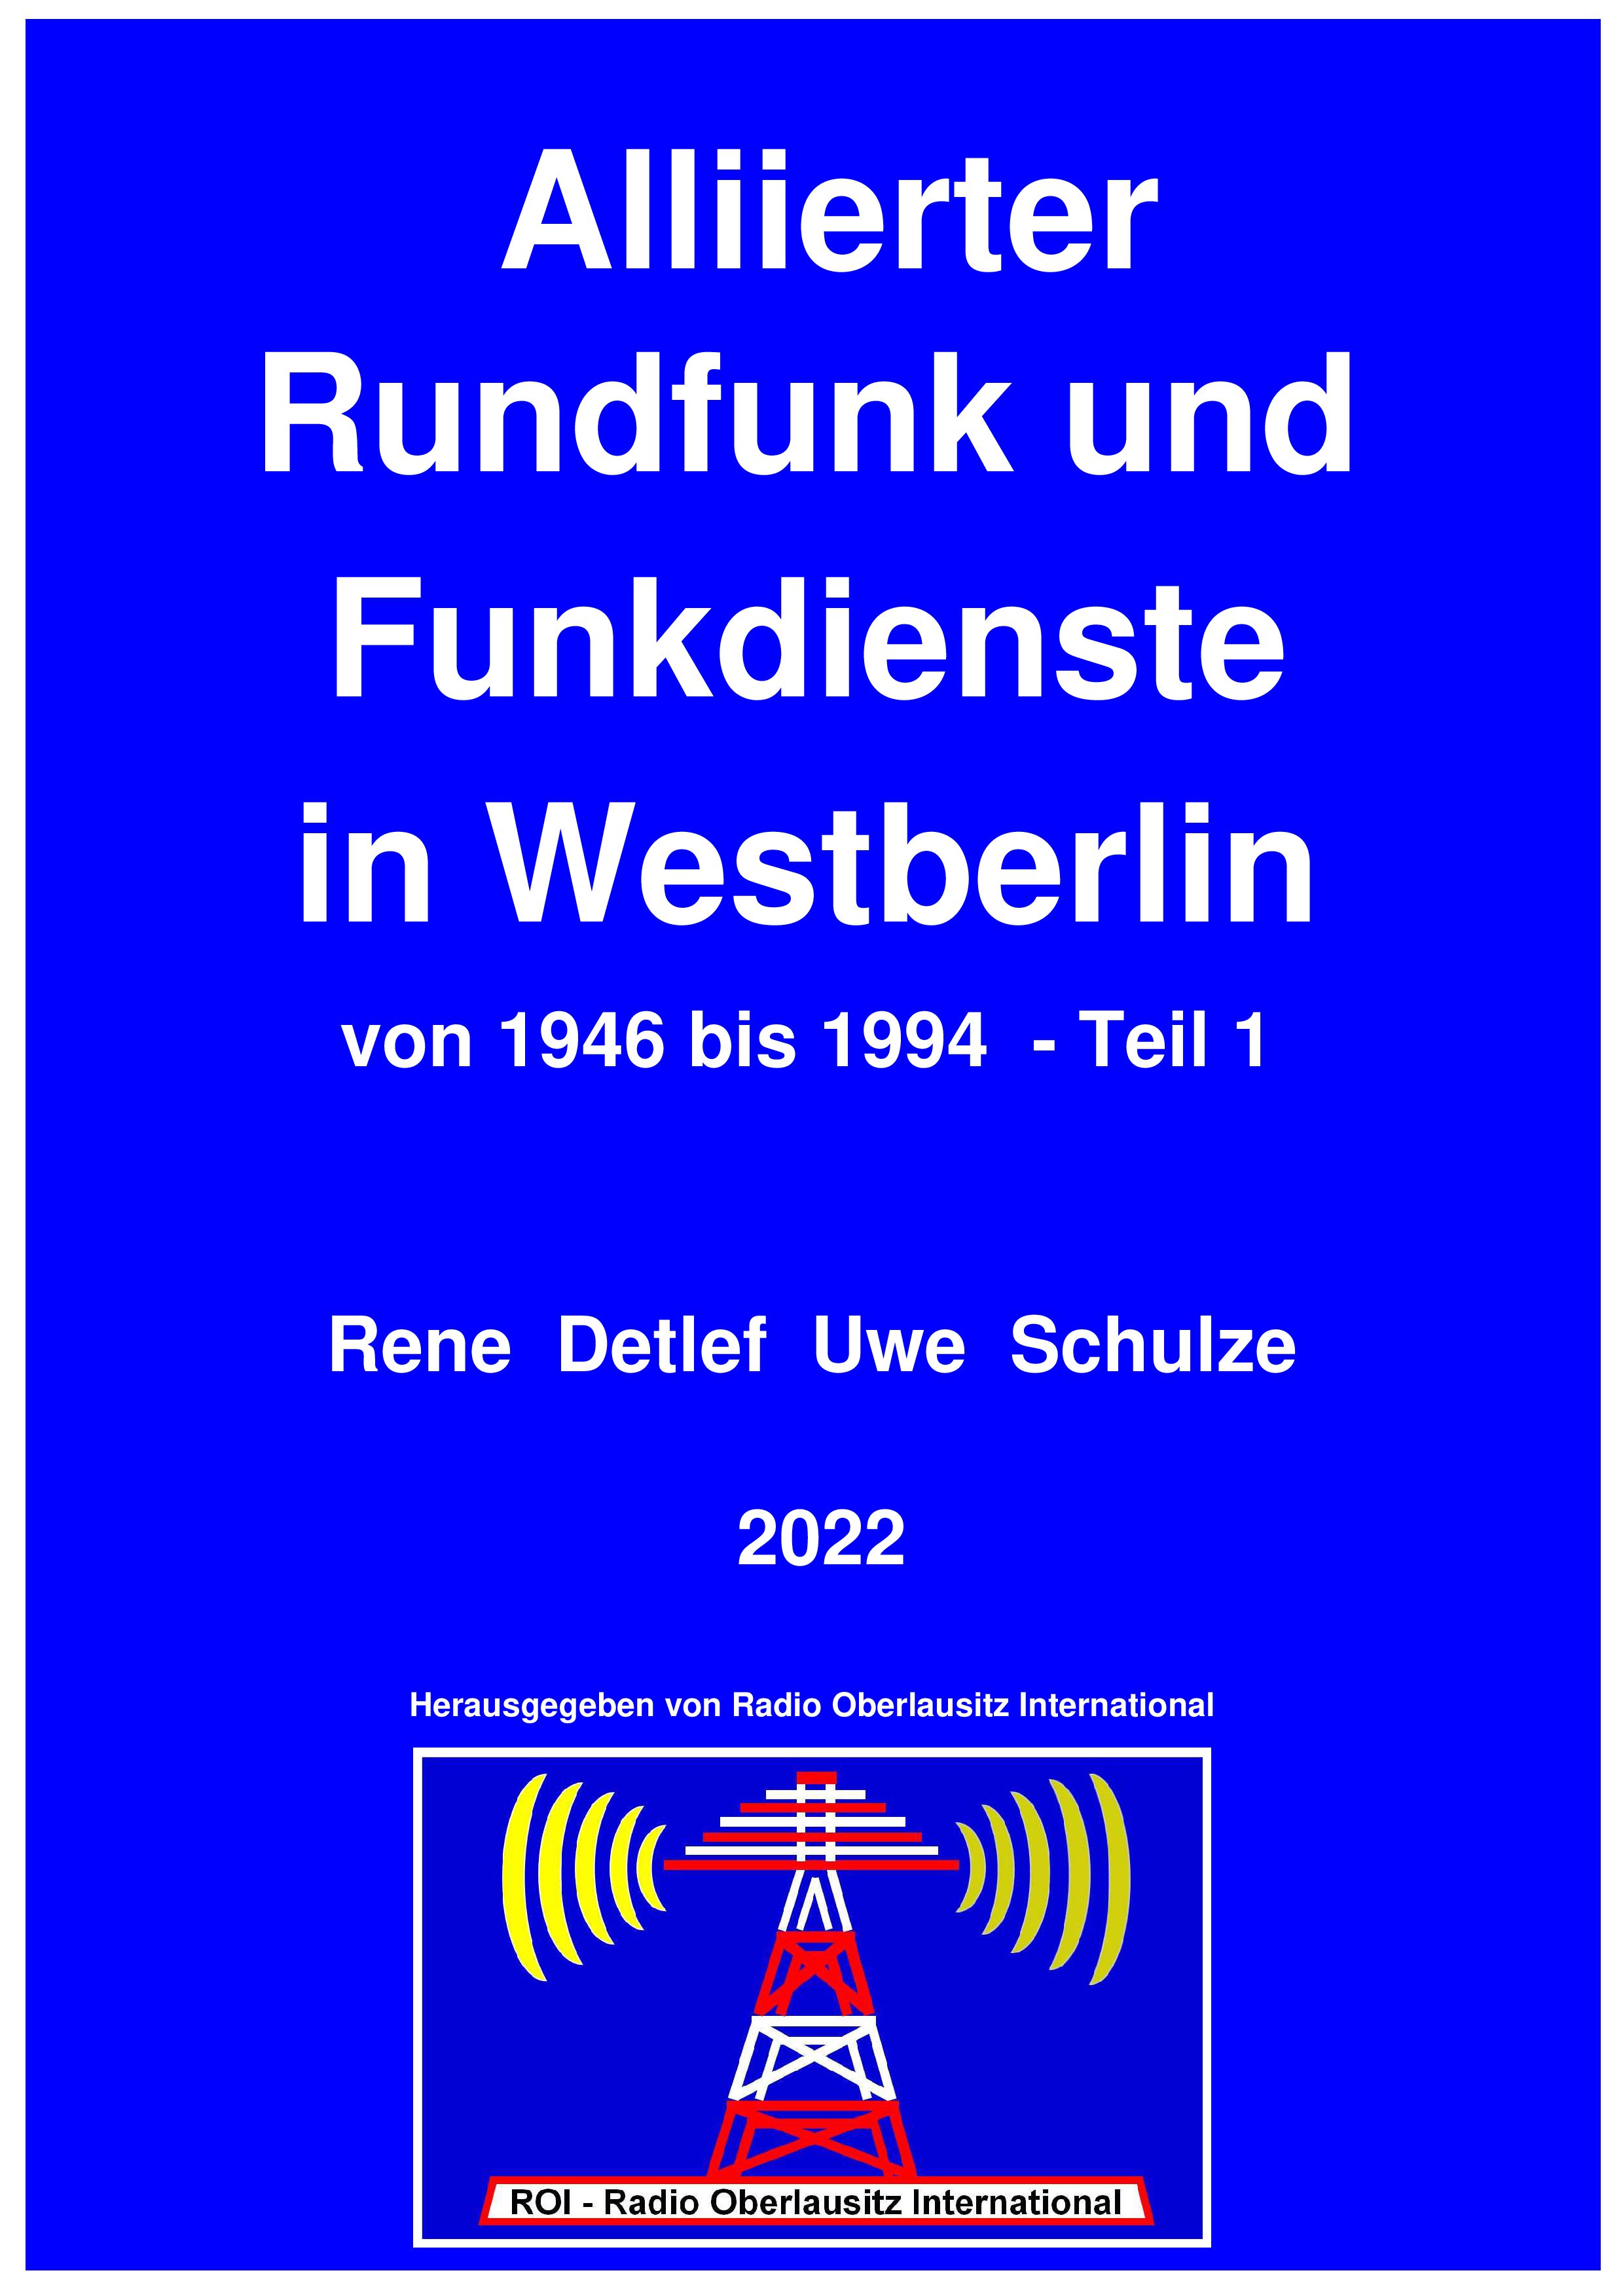 Leseprobe Alliierter Rundfunk und Funkdienste in Westberlin von 1946 bis 1994 - 
Teil 1,  farbig, 615 Seiten, 2022, Leseprobe